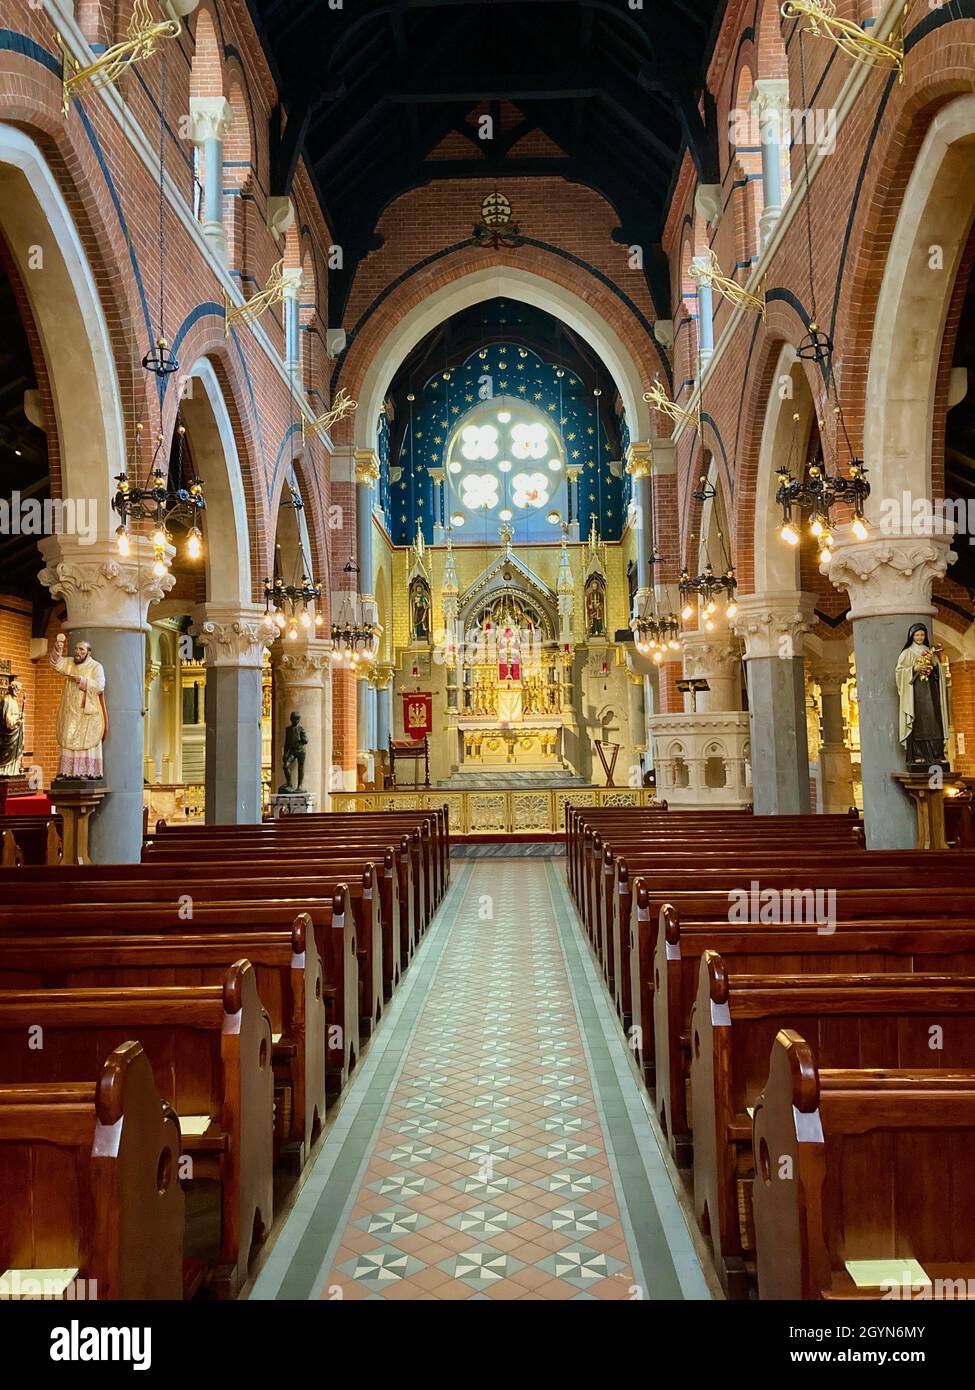 Chiesa cattolica del Corpus Christi, Santuario del Santissimo Sacramento a Covent Garden, Londra. Classificato di grado 2, architettura in stile gotico inglese. Foto Stock